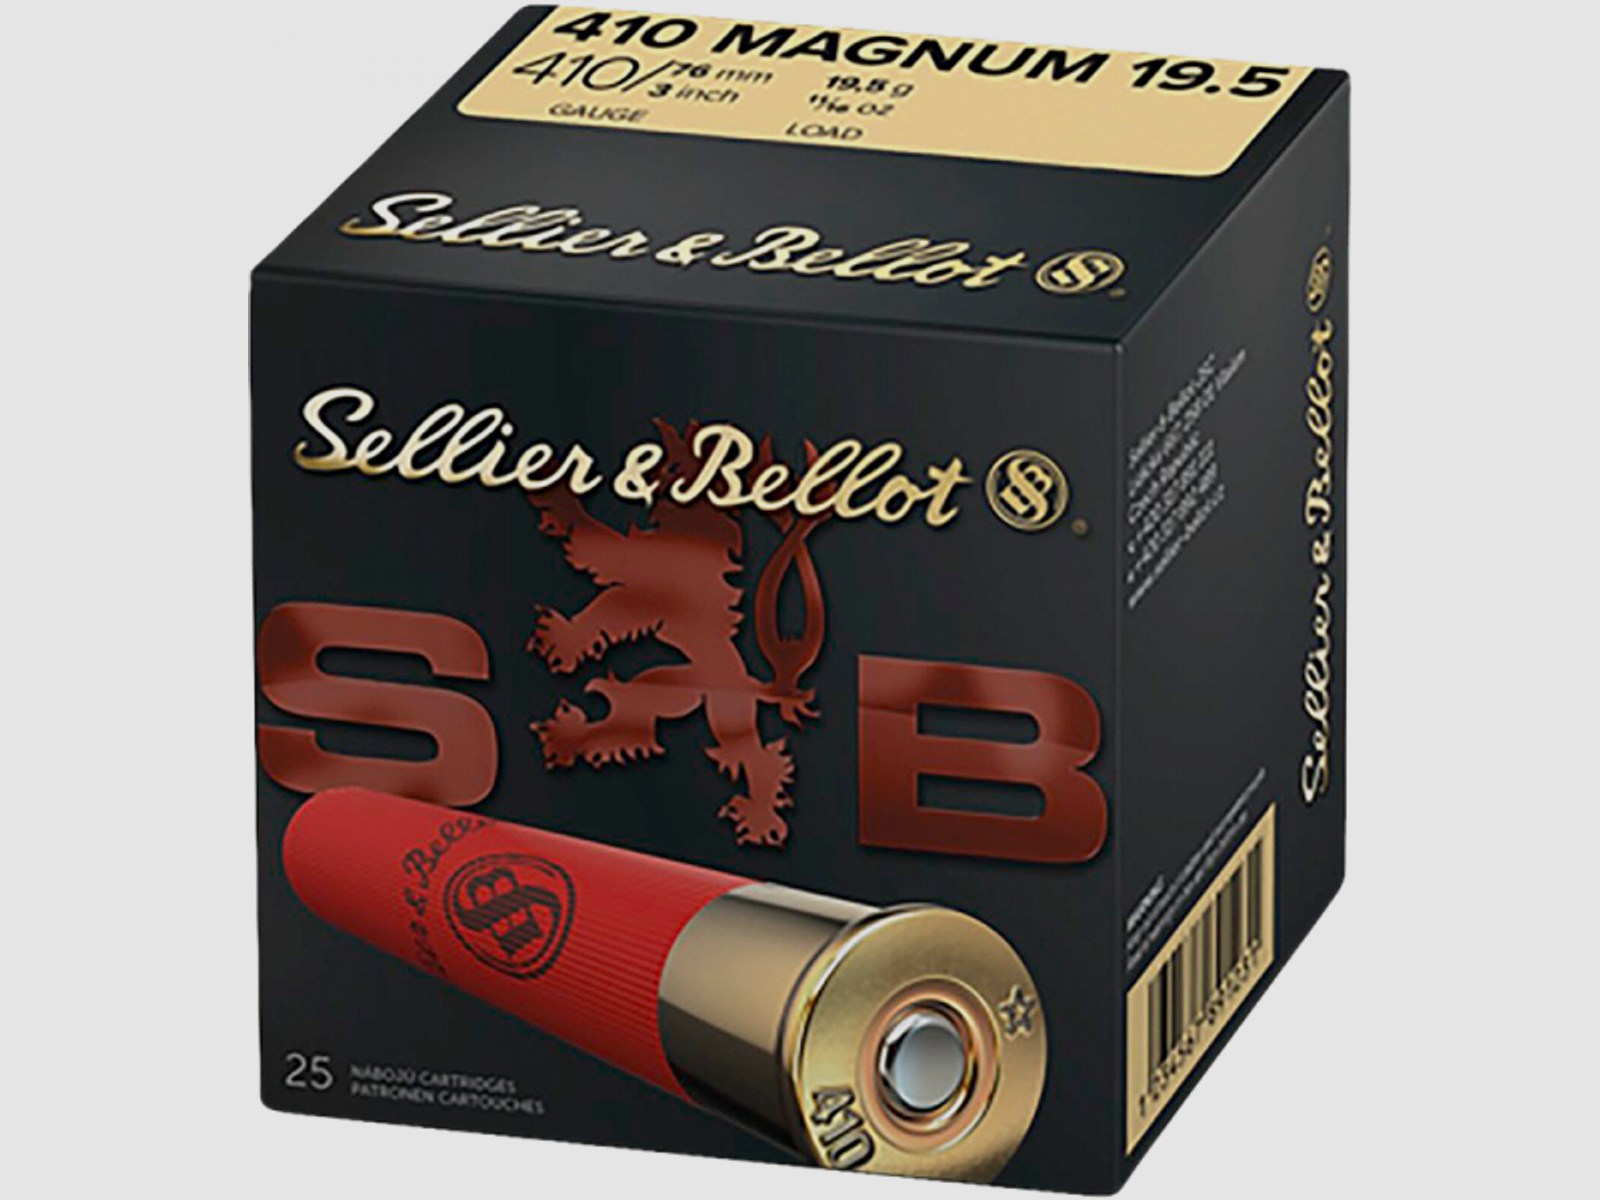 Sellier & Bellot 410 Magnum 19.5 410/76 19,5 gr Schrotpatronen